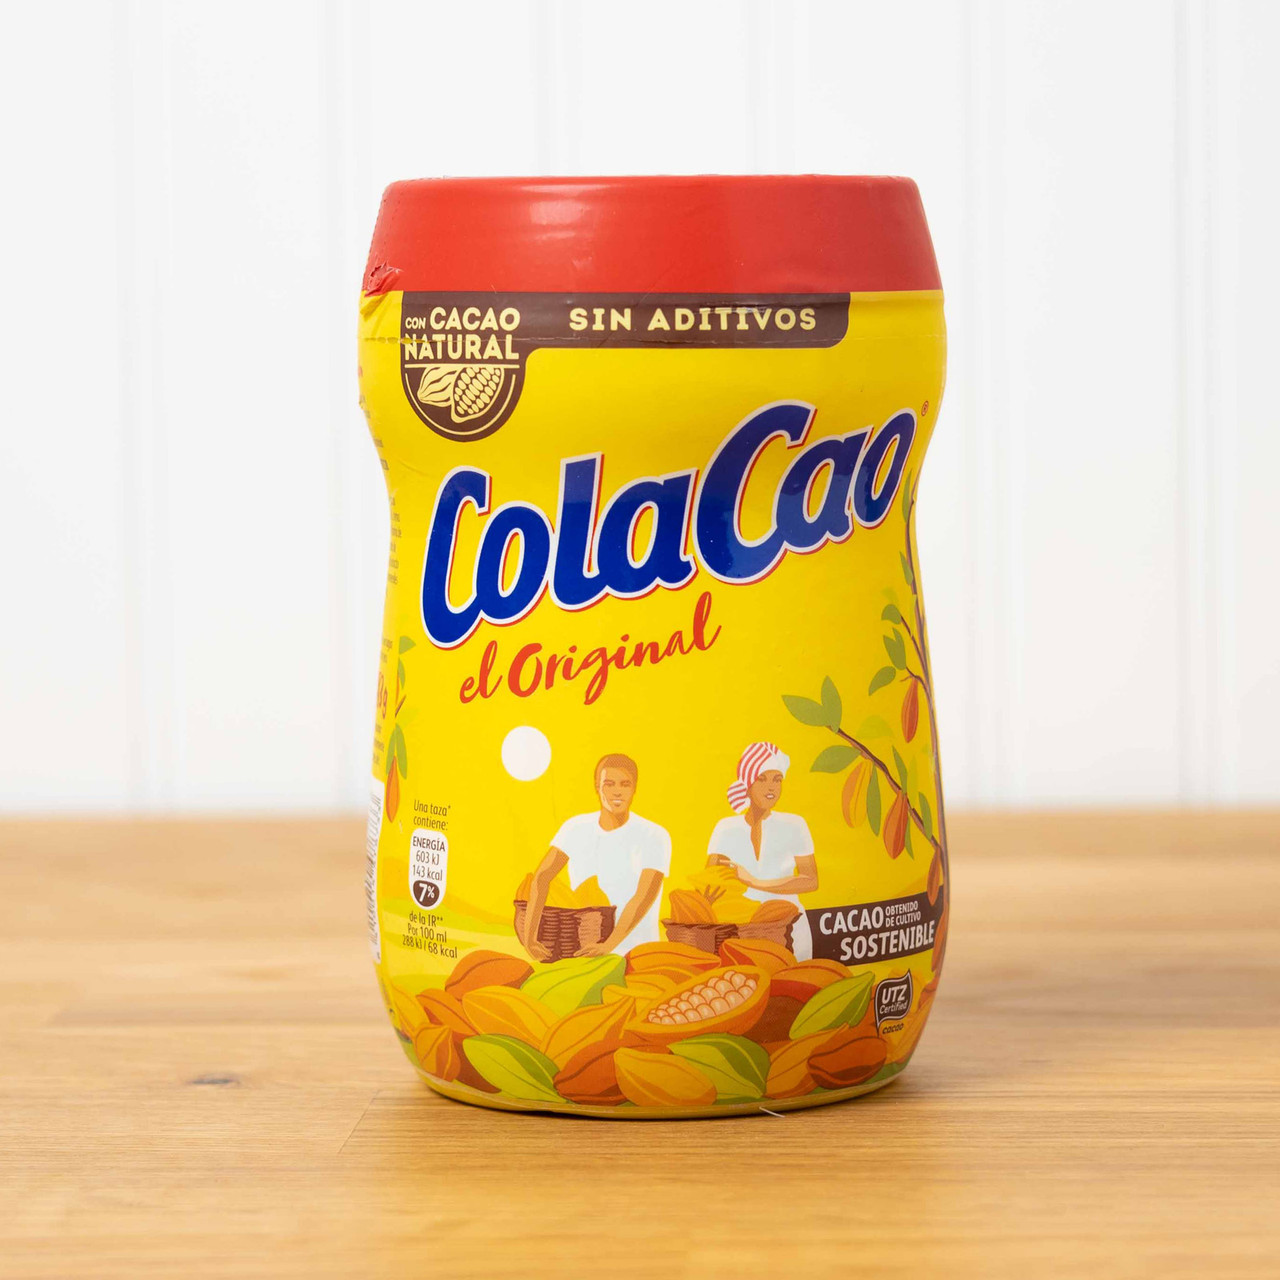 ColaCao Mocca - Cola cao